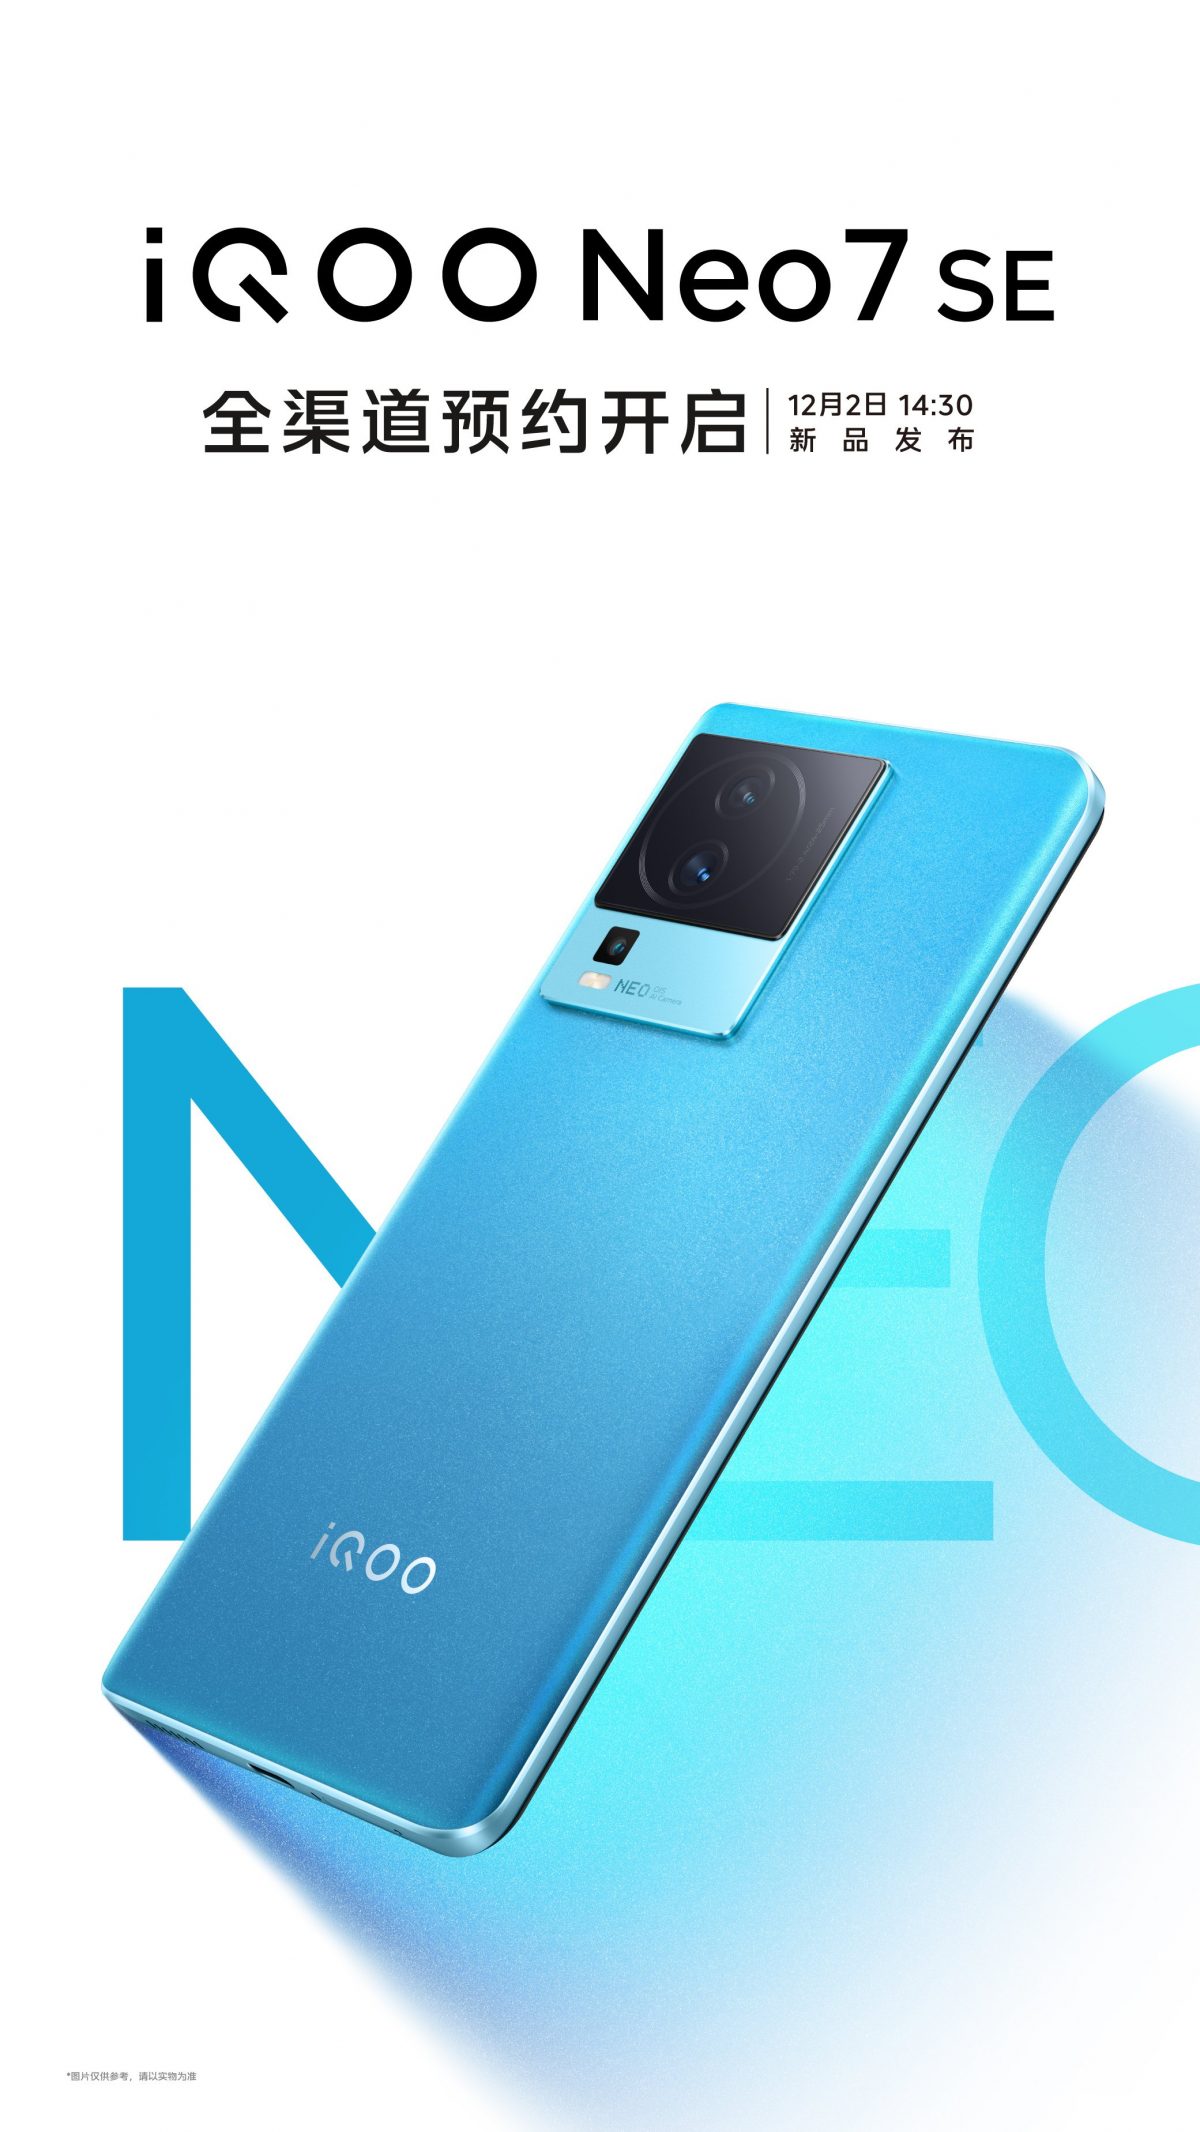 IQOO Neo7 SE cena specyfikacja techniczna